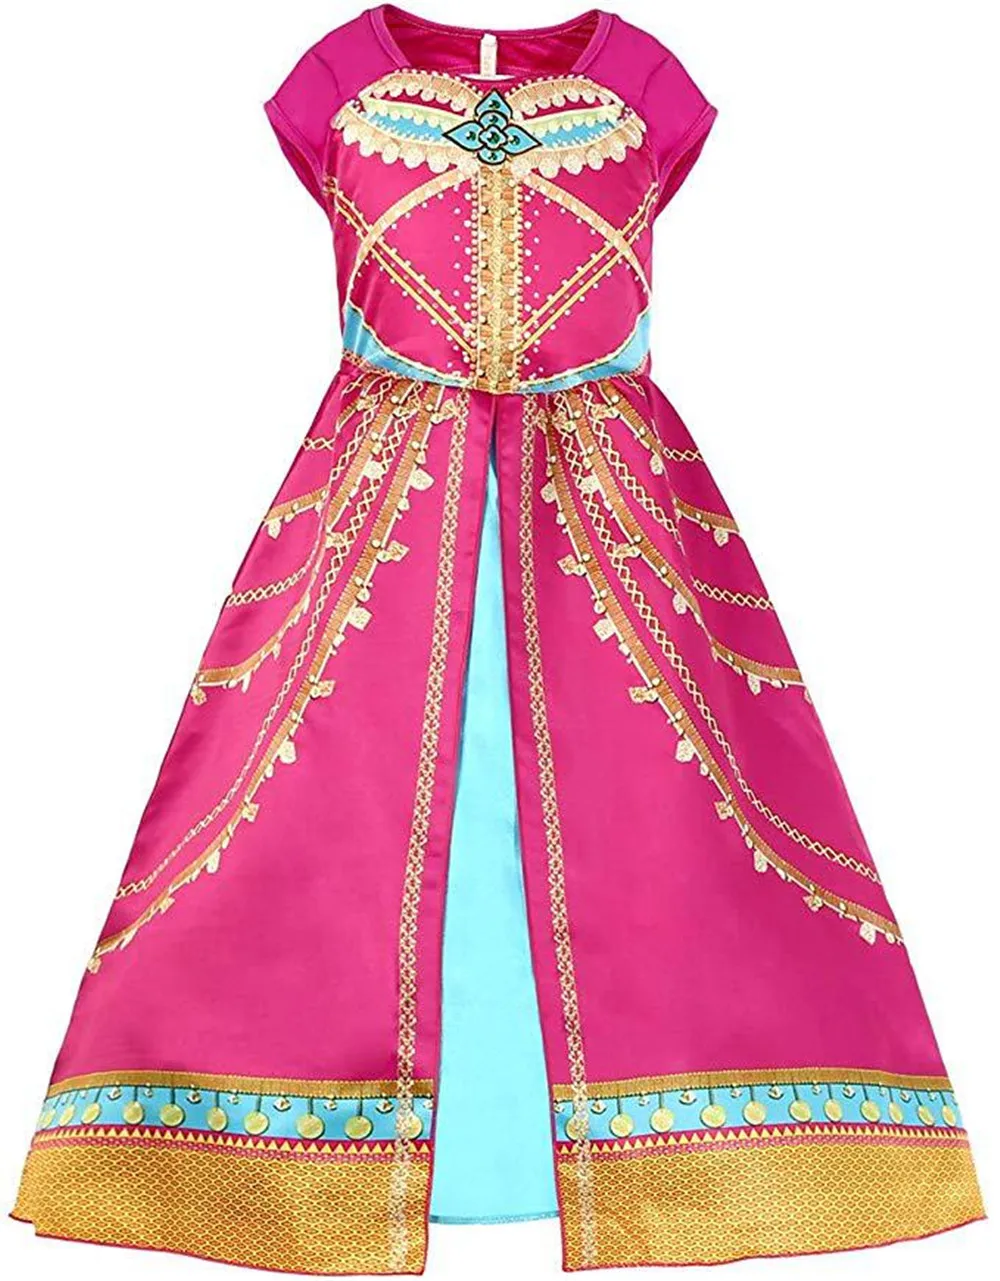 Косплей Аладдин Дисней платье цвета Жасмин костюм Розовый Фуксия наряд для детей взрослый для хеллоуина, карнавала, Рождества костюм